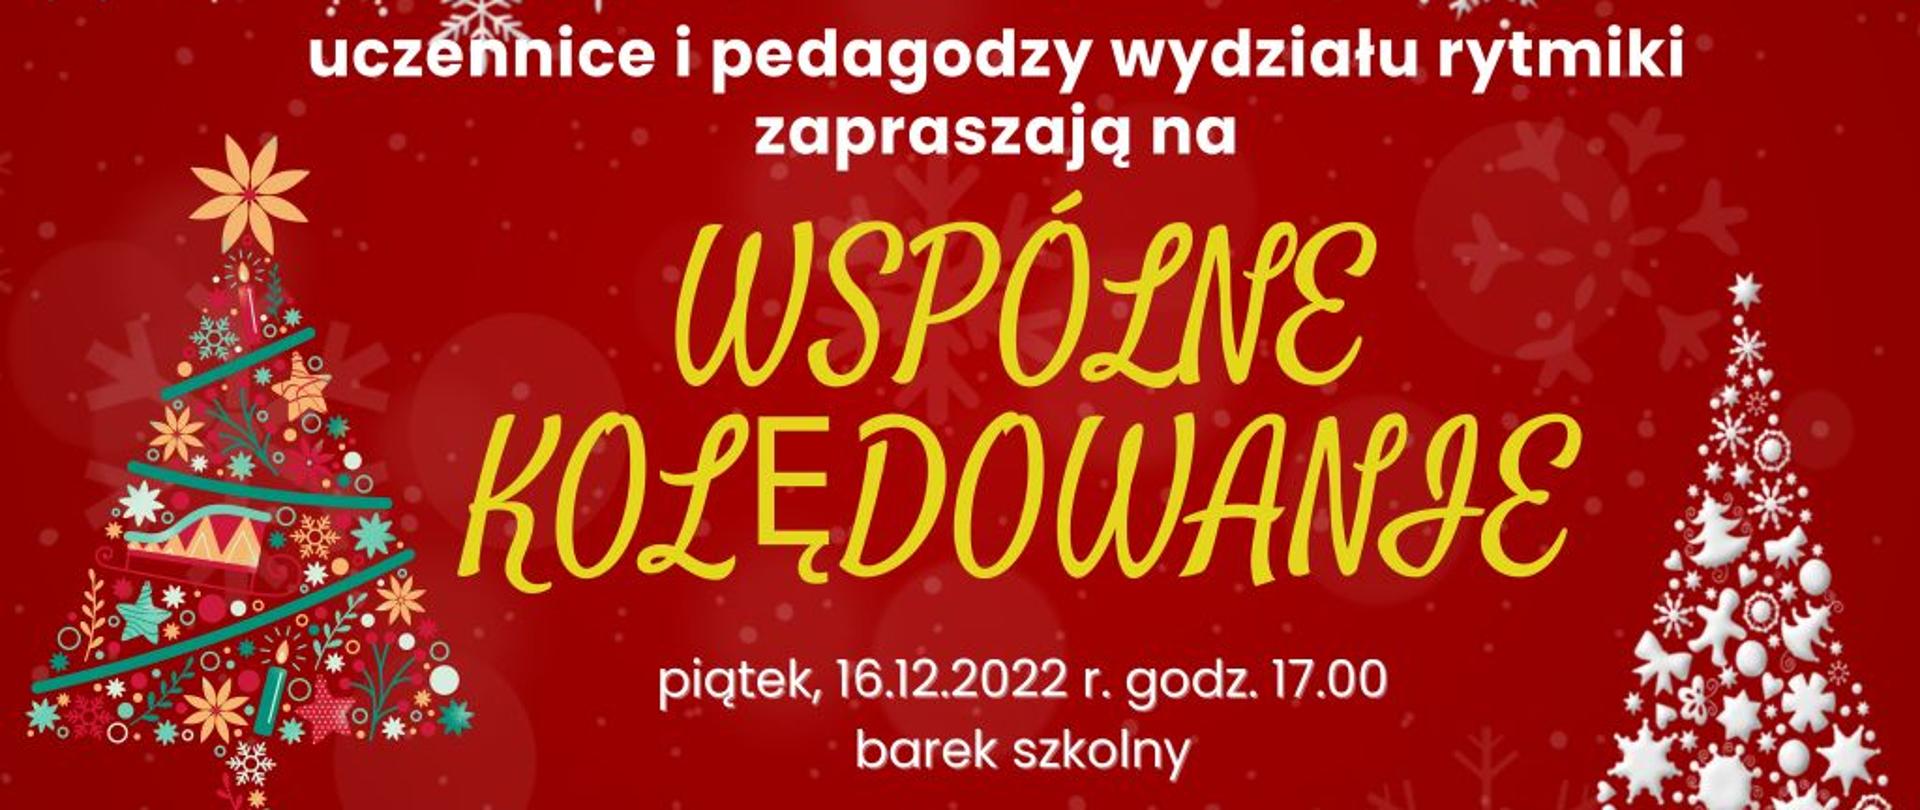 Plakat czerwone tło z białymi gwiazdkami napis uczennice i pedagodzy wydziału rytmiki zapraszają na wspólne kolędowanie 16.12.2022 godz. 19 barek szkolny